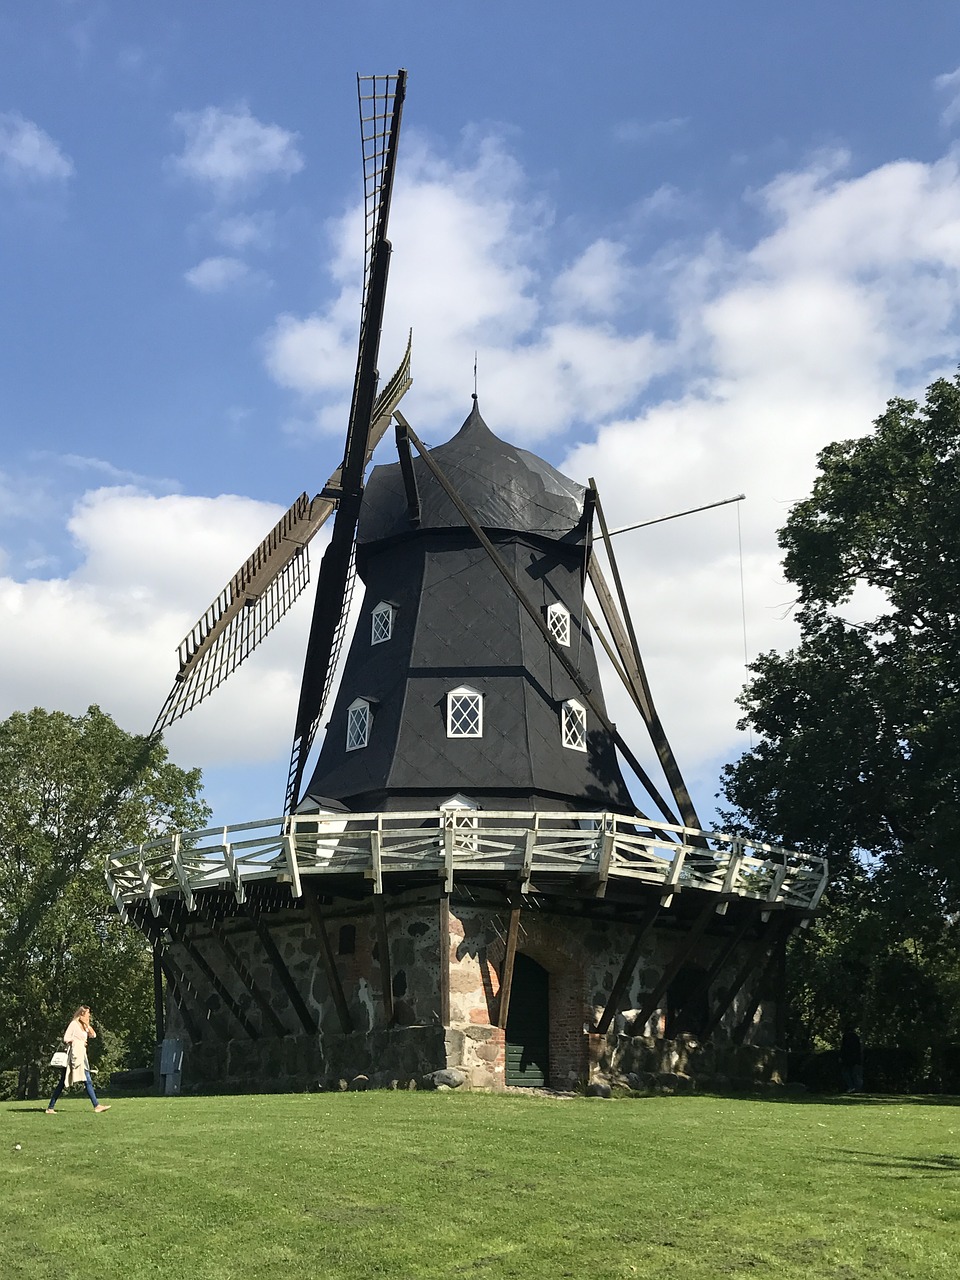 malmo sweden windmill free photo